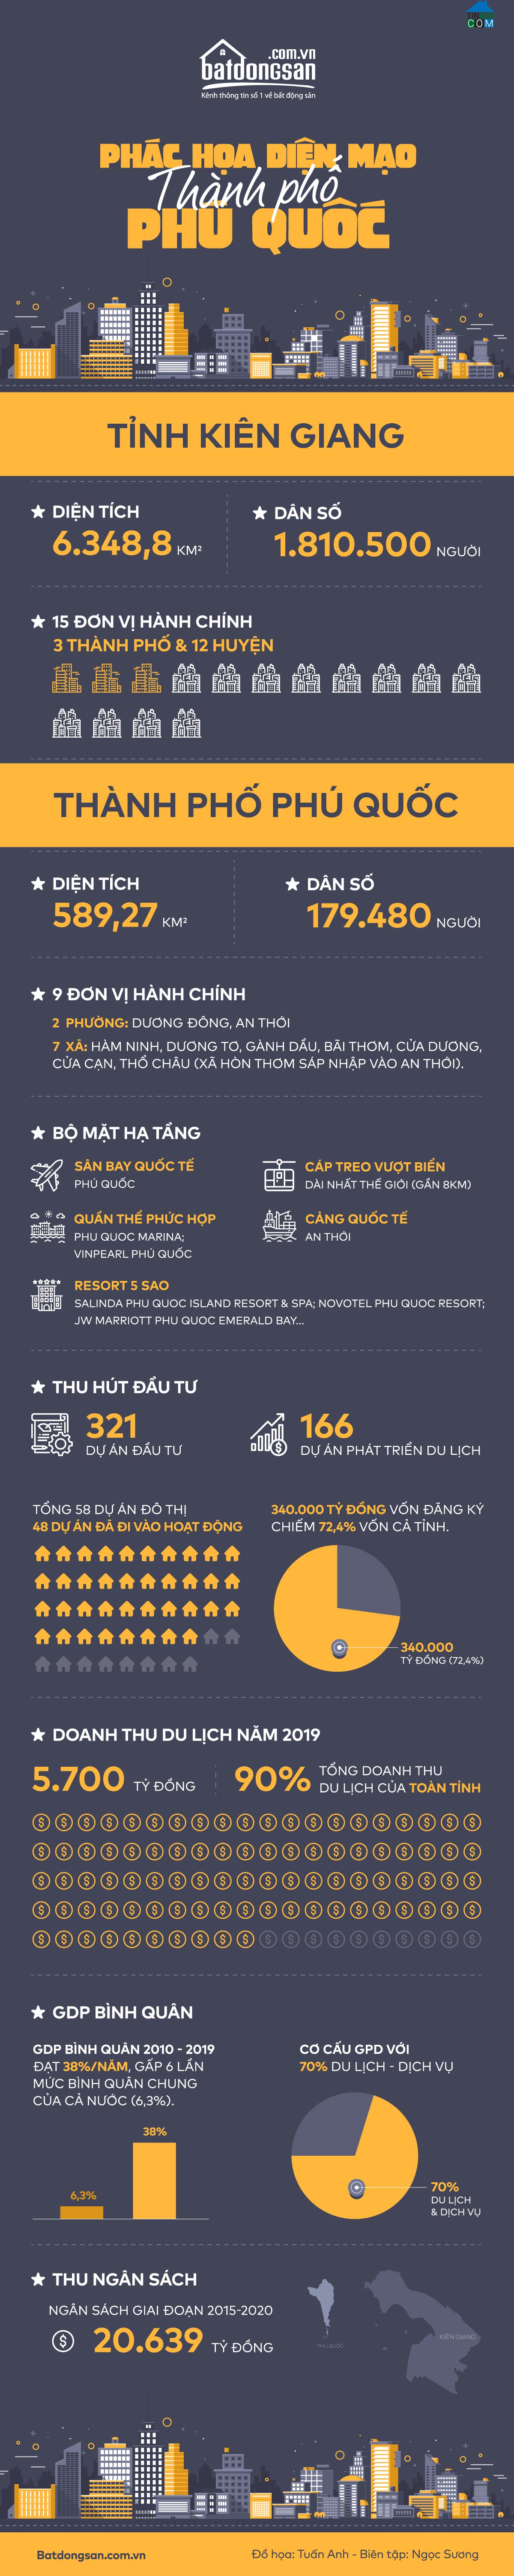 Infographic các thông tin về thành phố Phú Quốc